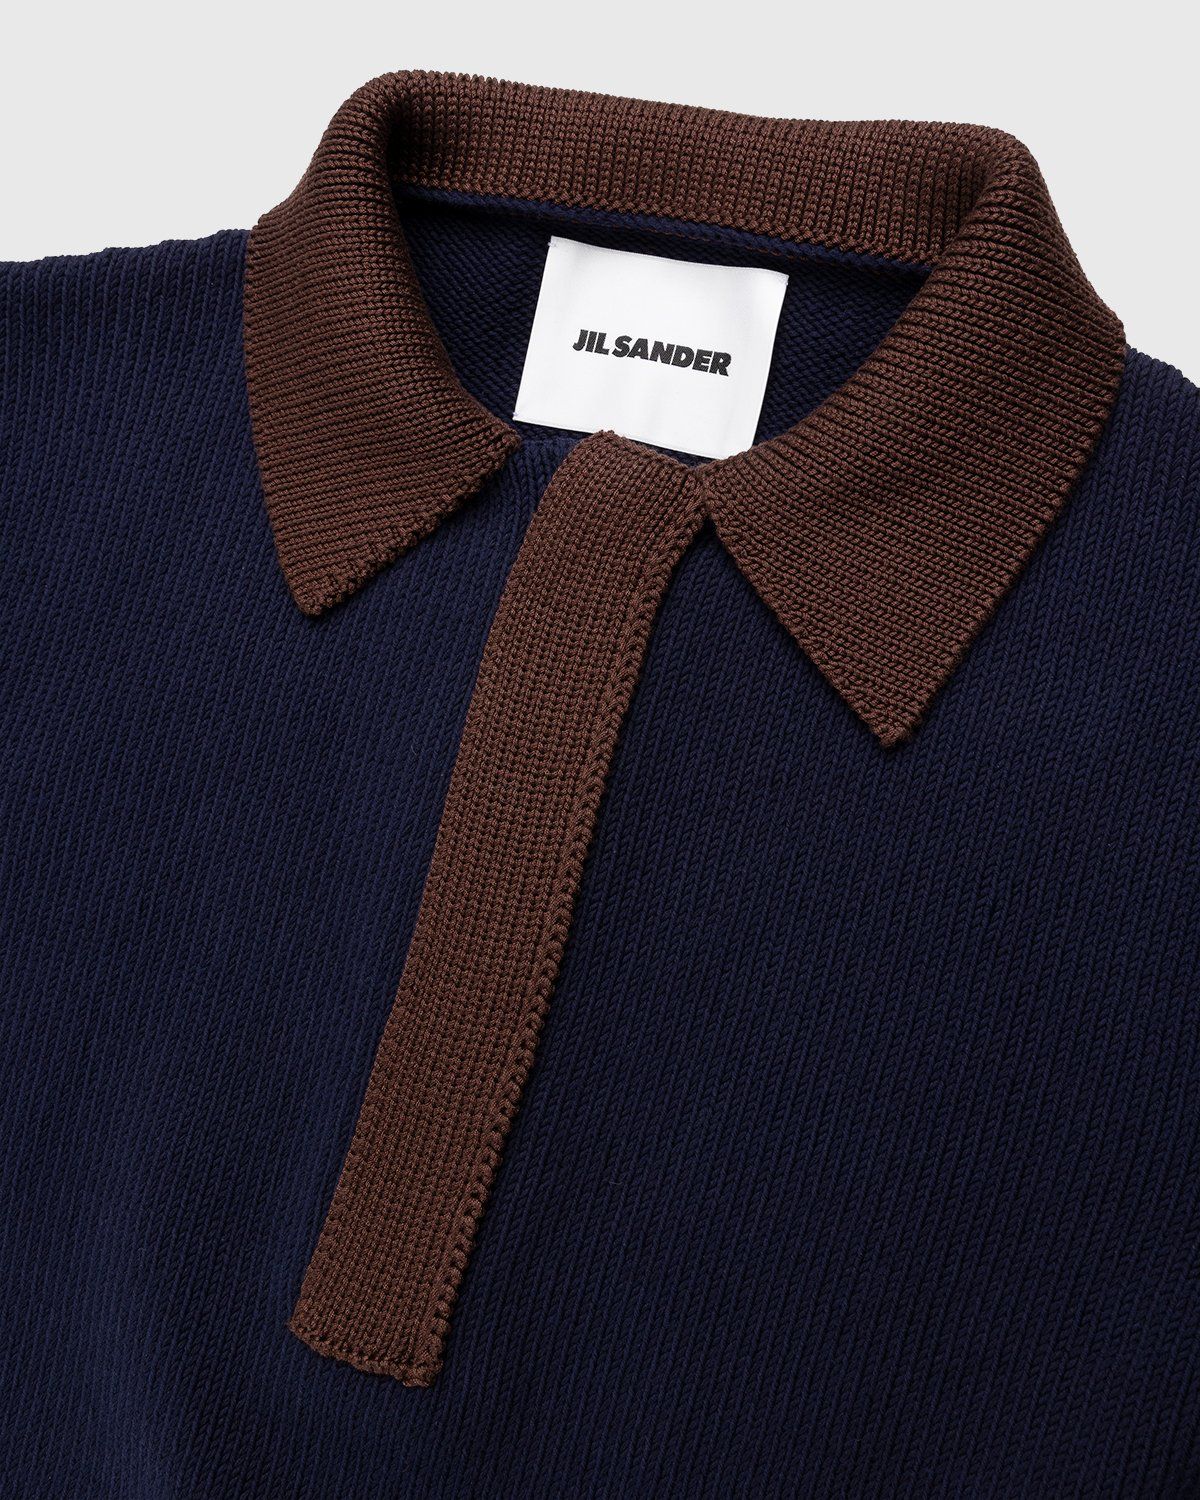 Jil Sander – Short Sleeve Knit Shirt Dark Blue - Polos - Blue - Image 4